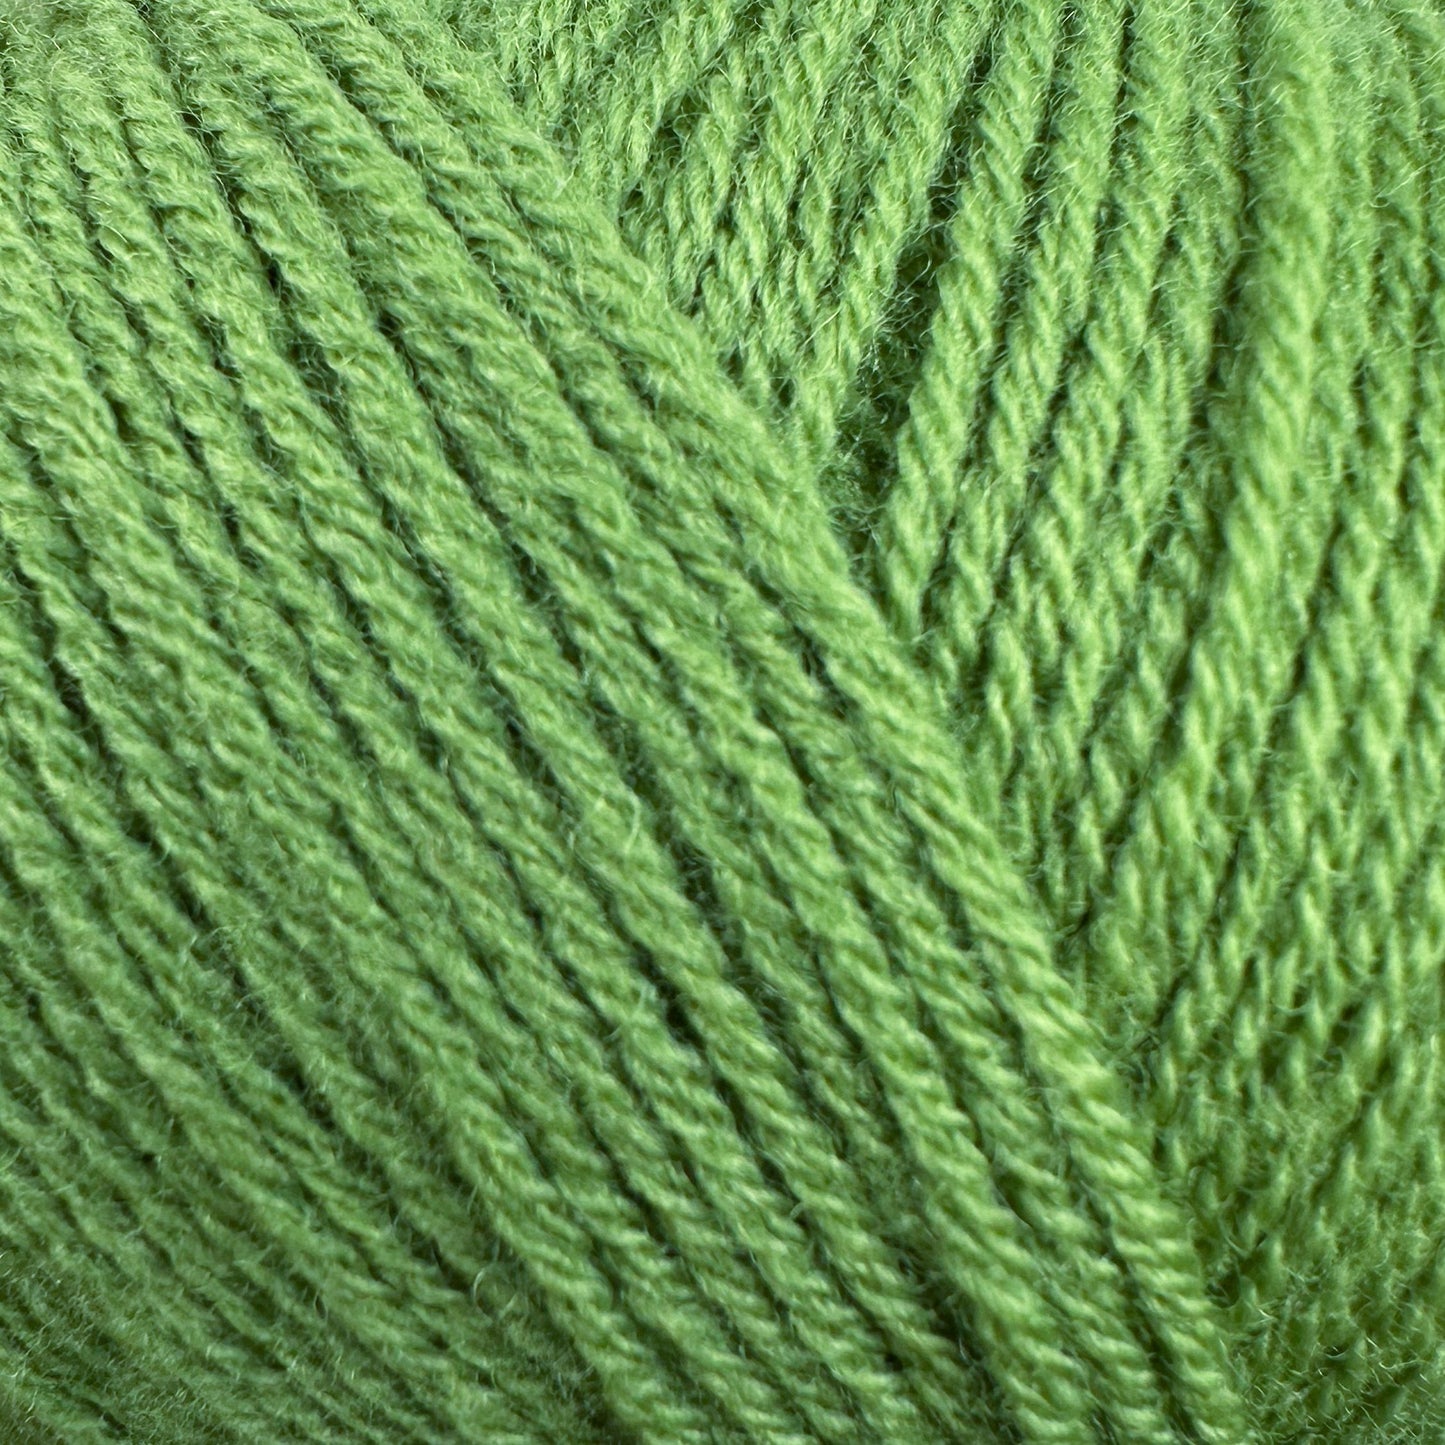 Knitting for Olive Merino - 50g